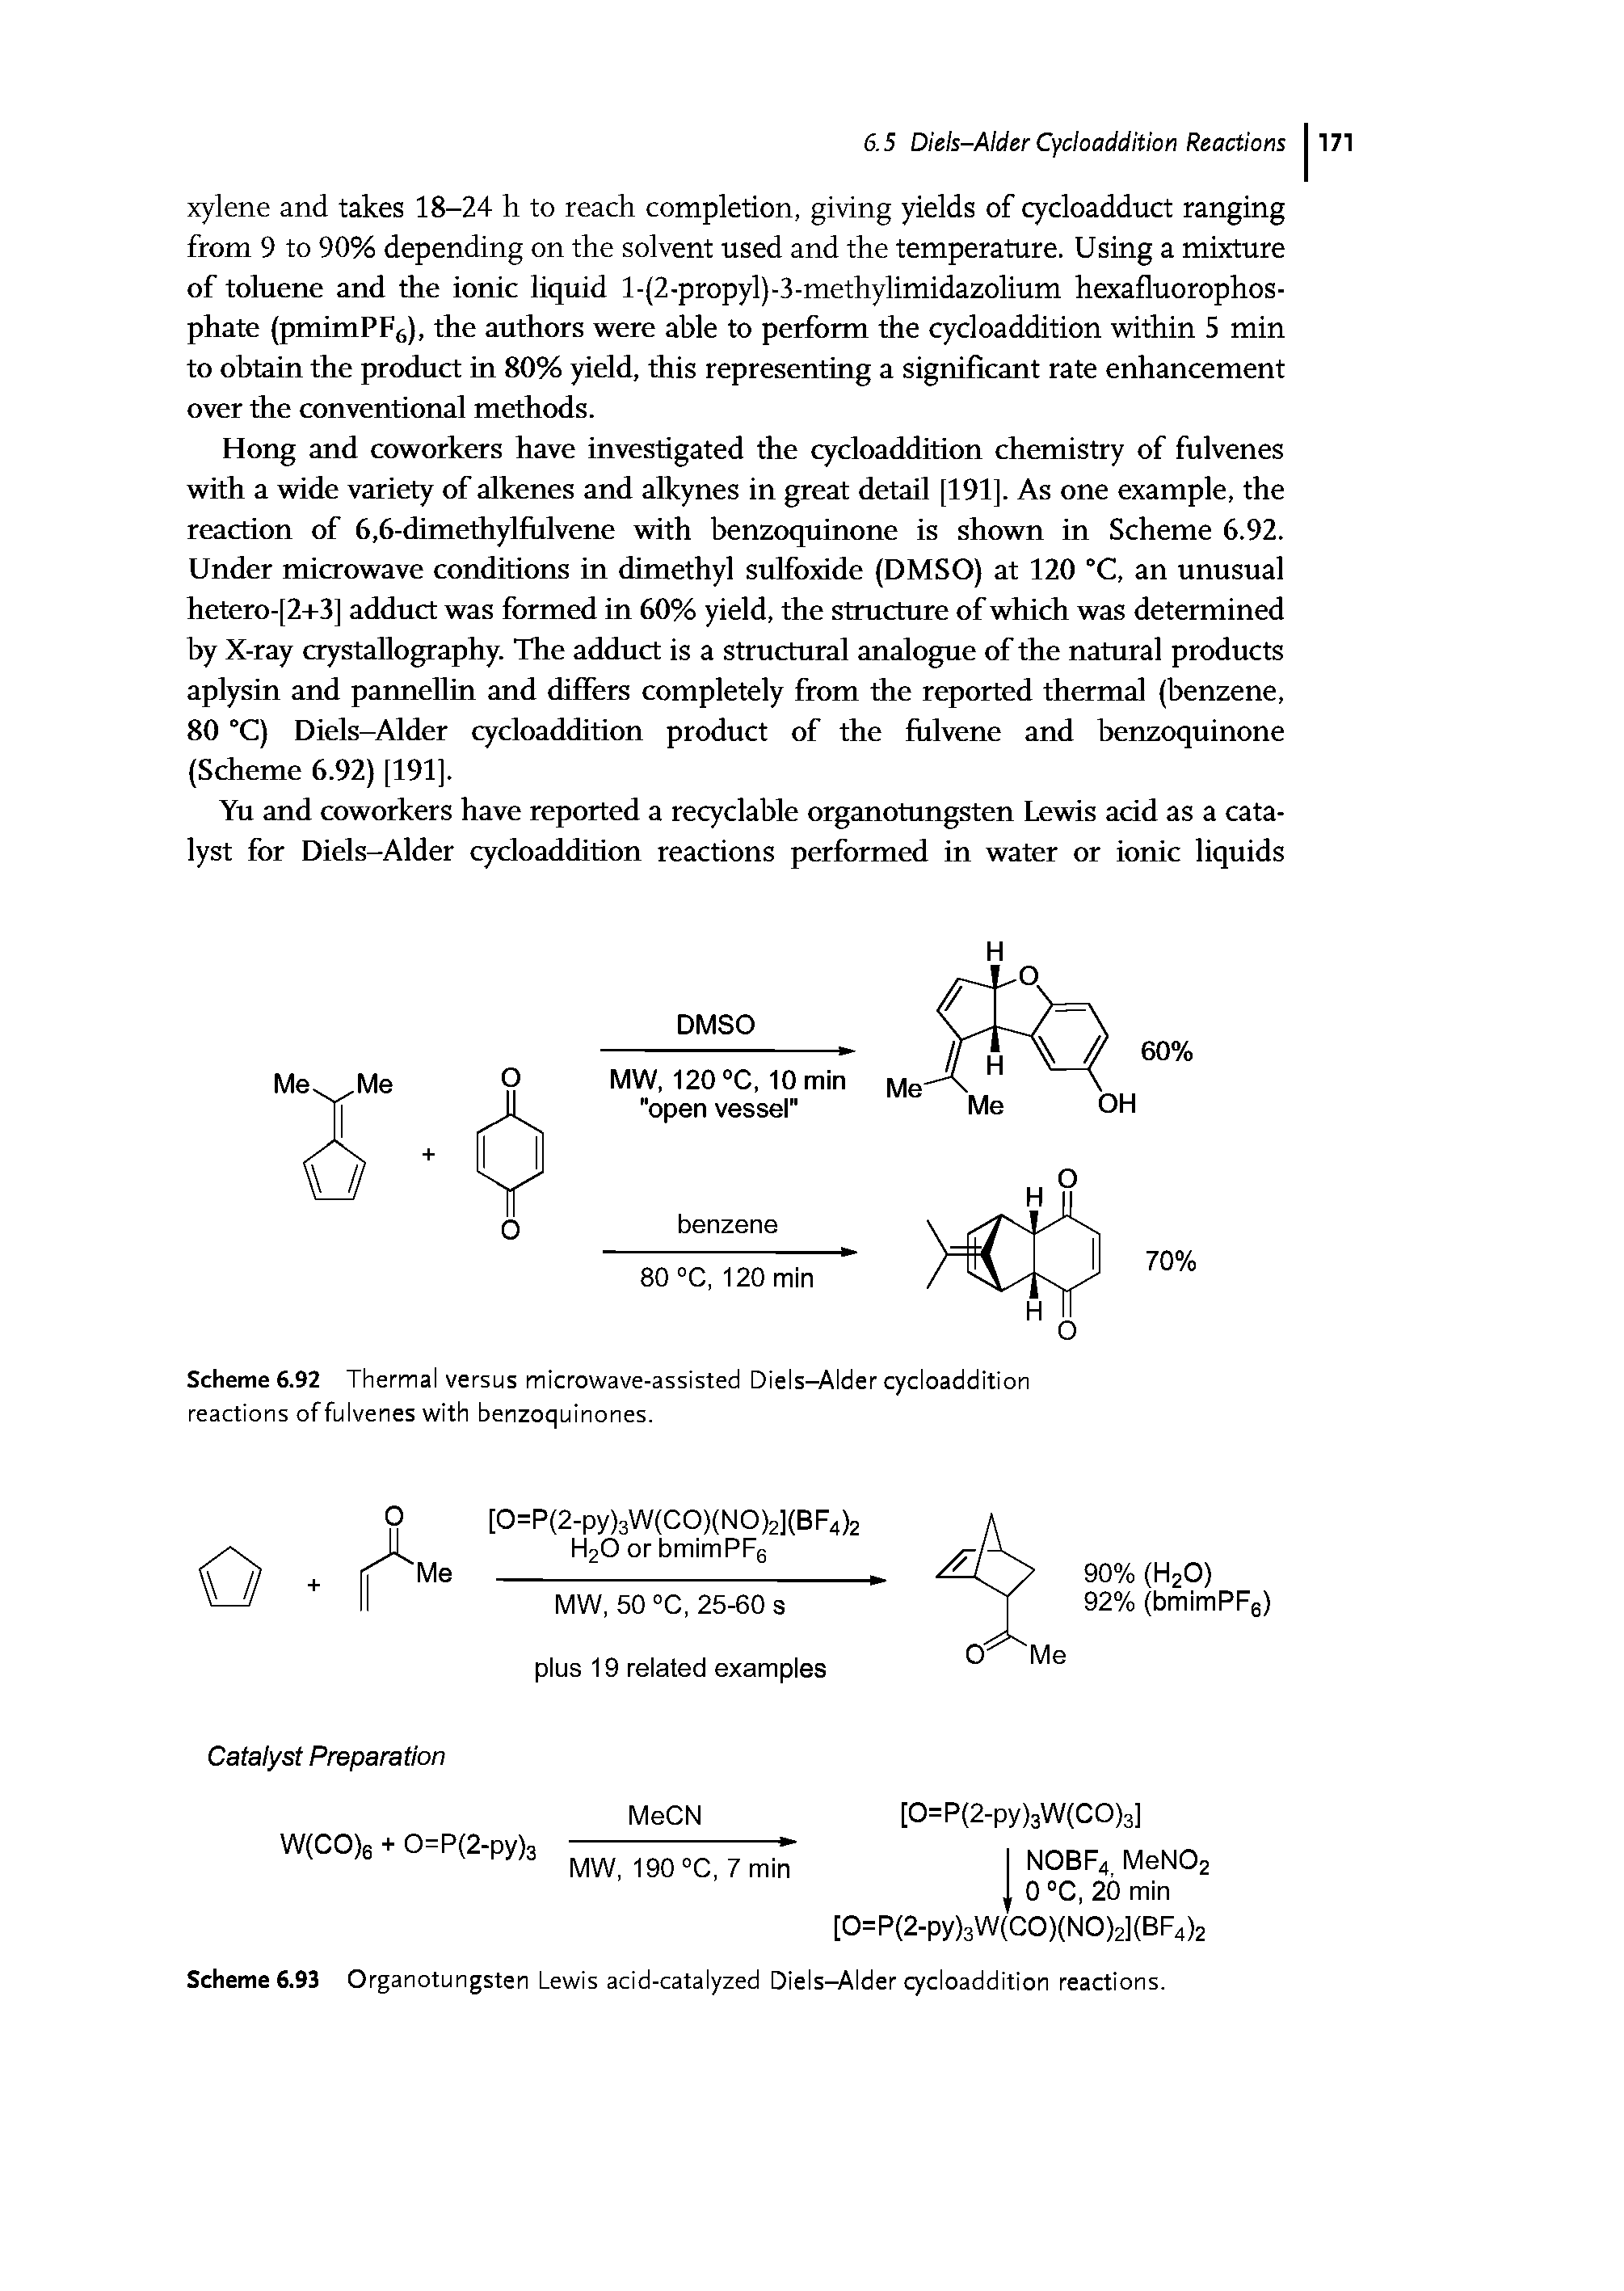 Scheme 6.93 Organotungsten Lewis acid-catalyzed Diels-Alder cycloaddition reactions.